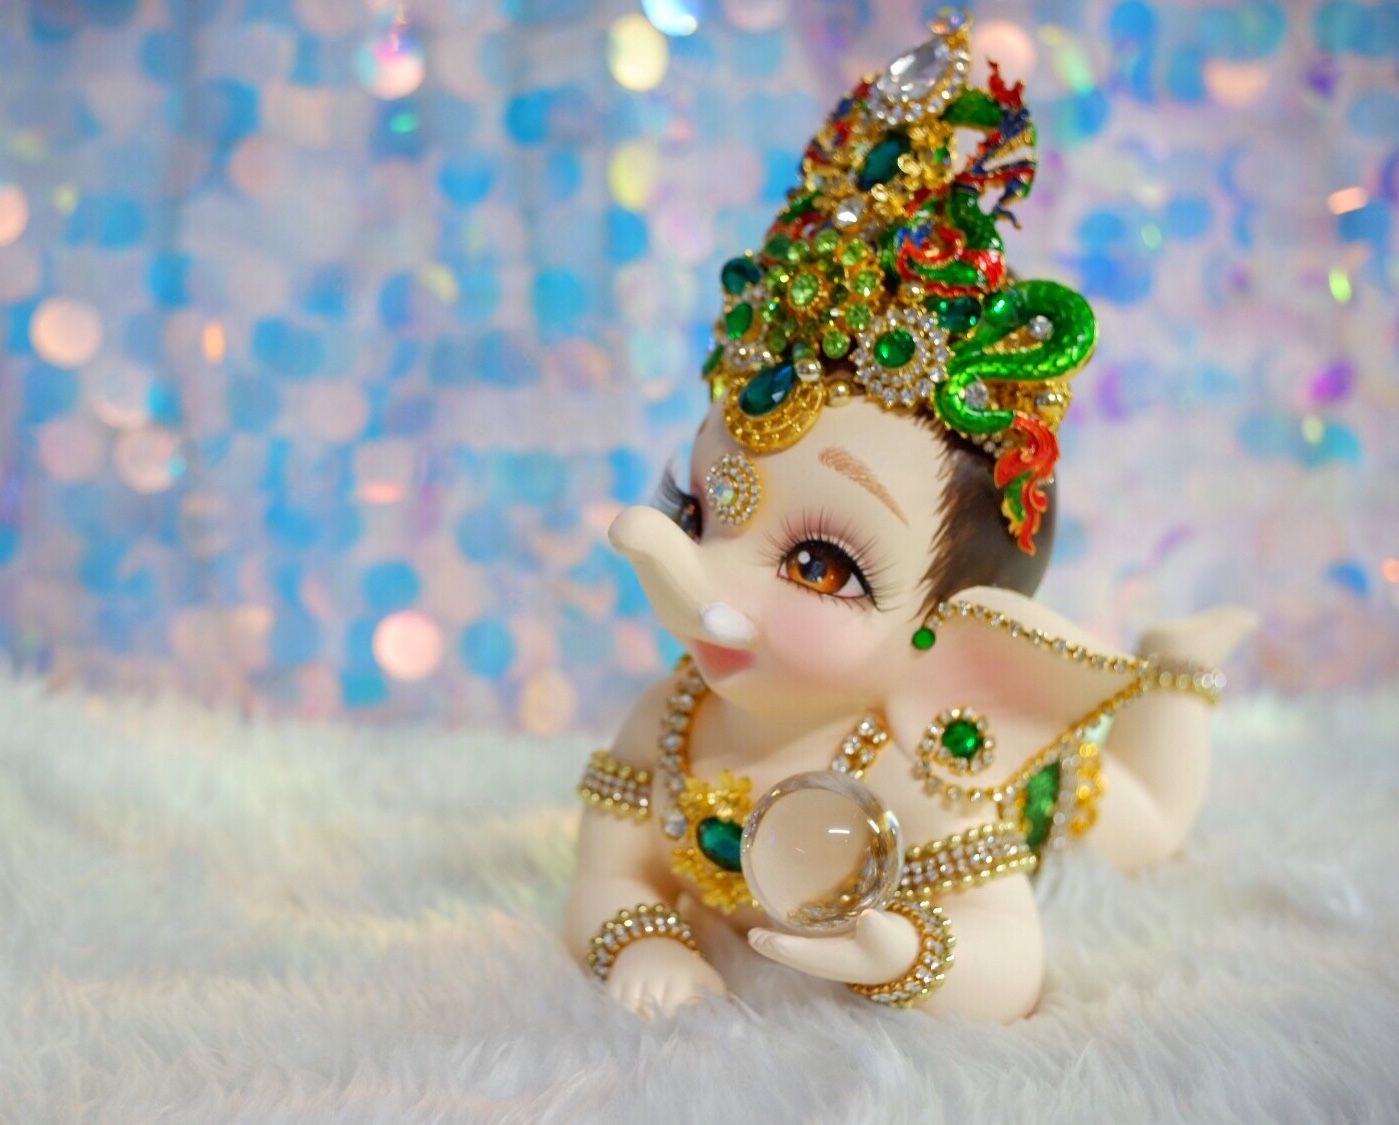 Baby Ganesha ideas. baby ganesha, ganesha, ganesh image